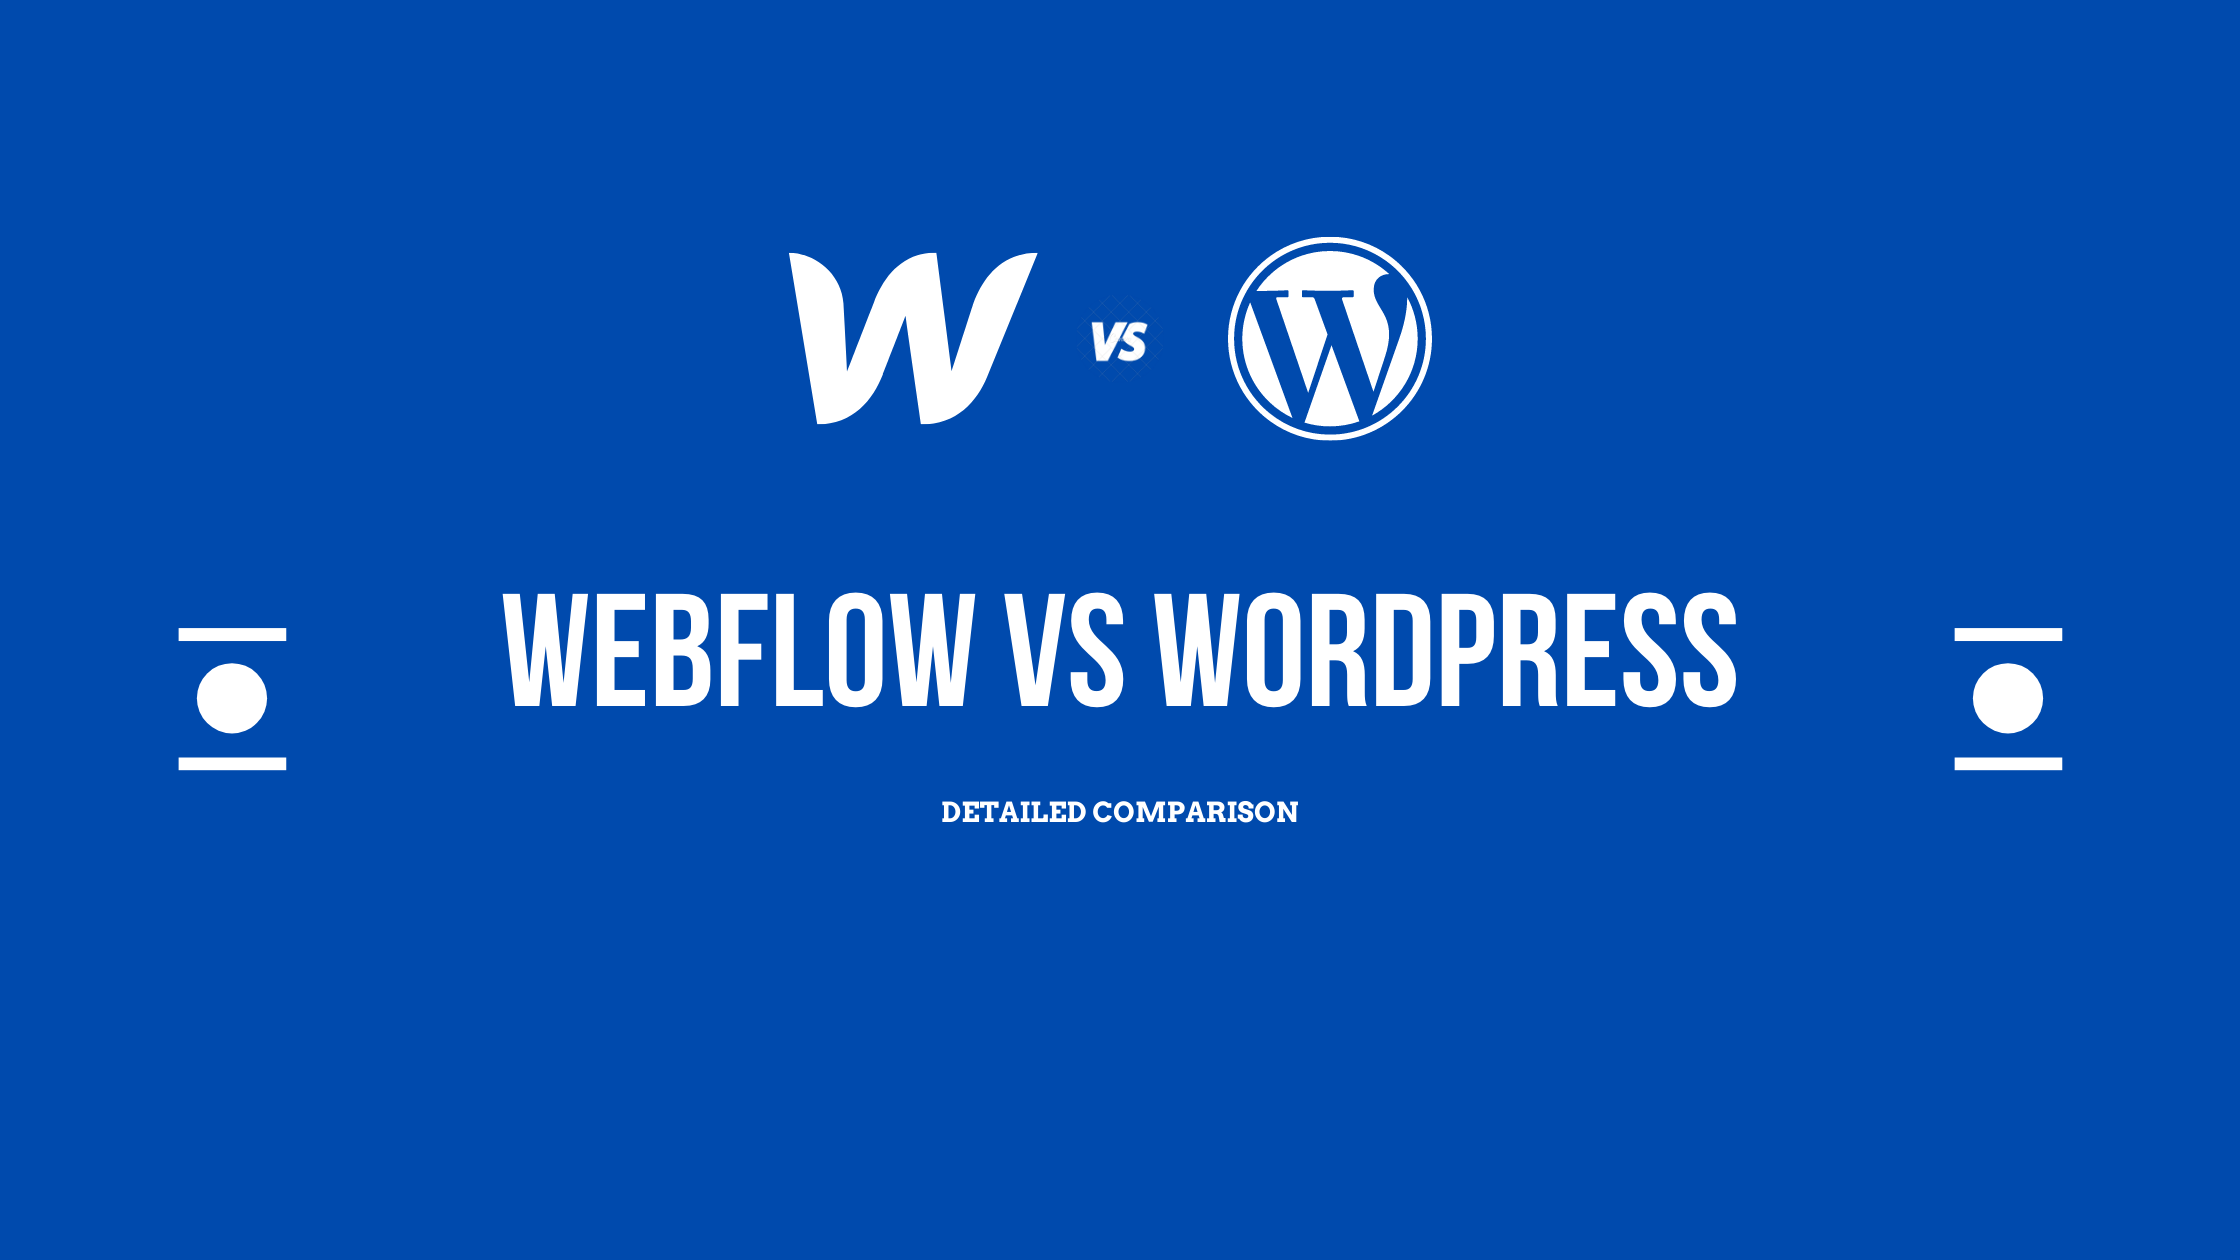 Webflow vs WordPress: Which is Best in 2022?